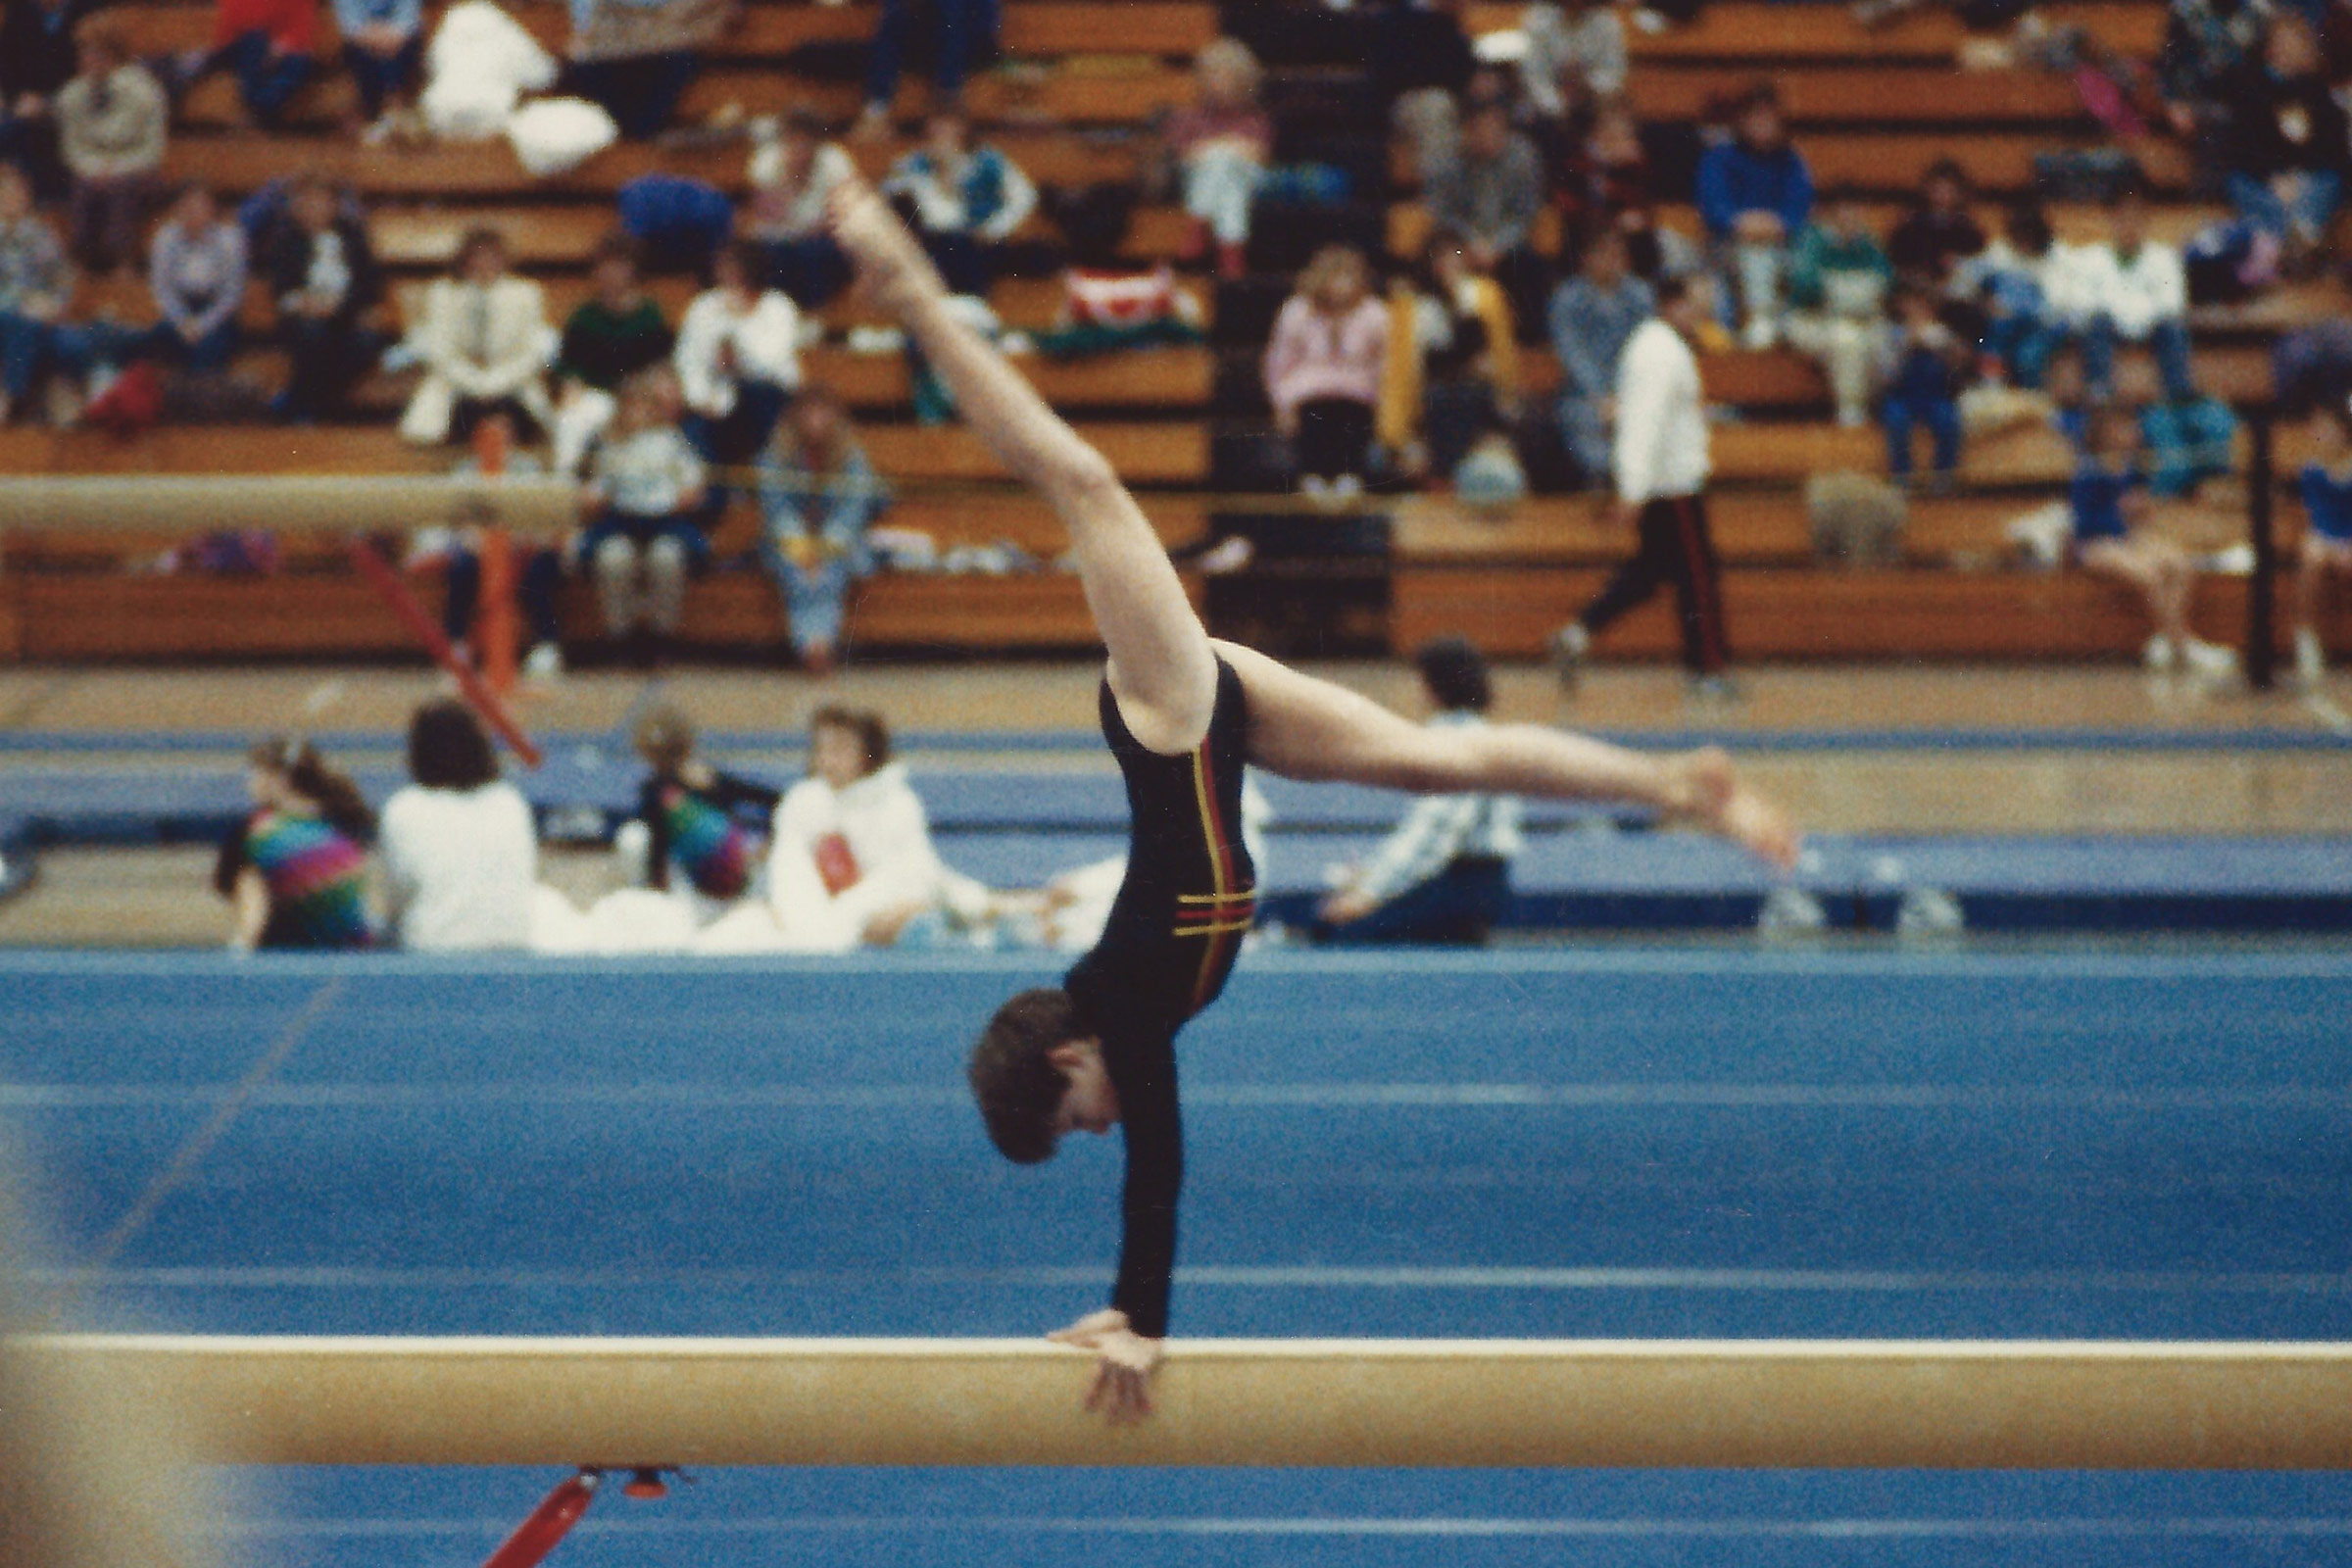 Teristi competes at a national invitational in 1987 (Courtesy Sara Teristi)